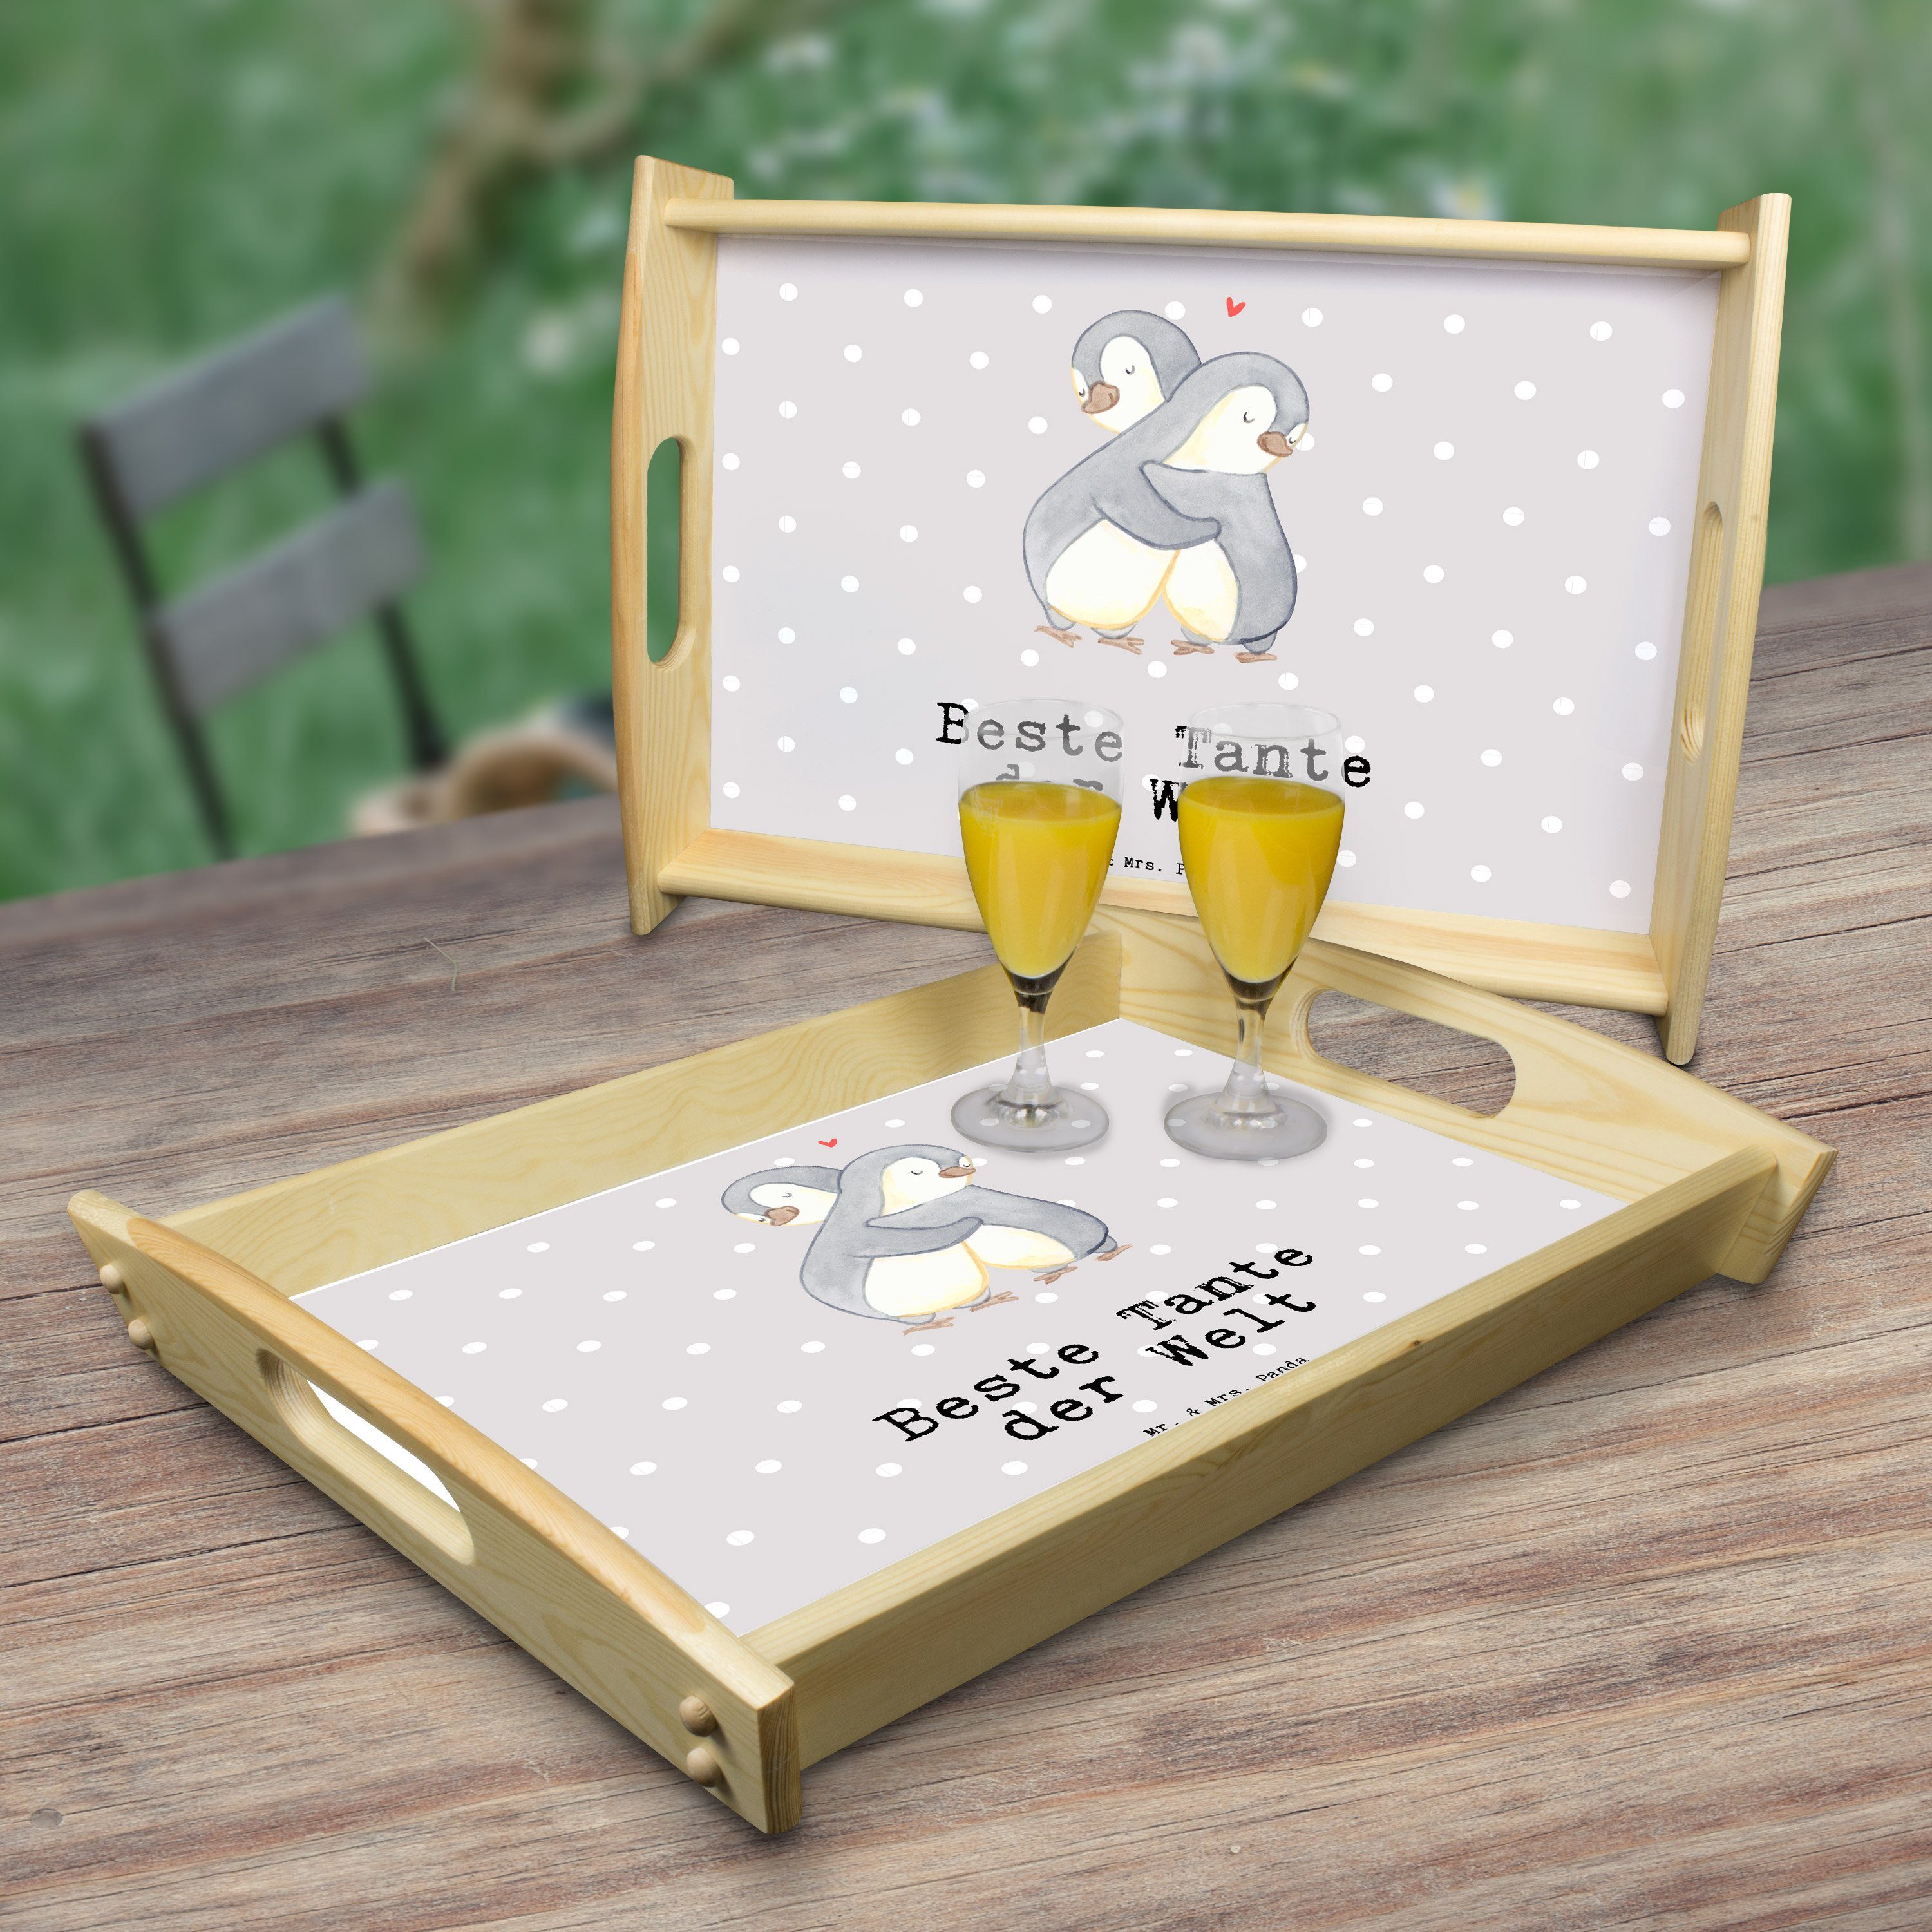 der Pastell & Pinguin Welt Panda Grau - Tablett Geschenk, - Tante (1-tlg) Mrs. Mr. Frühstückstab, Echtholz lasiert, Beste